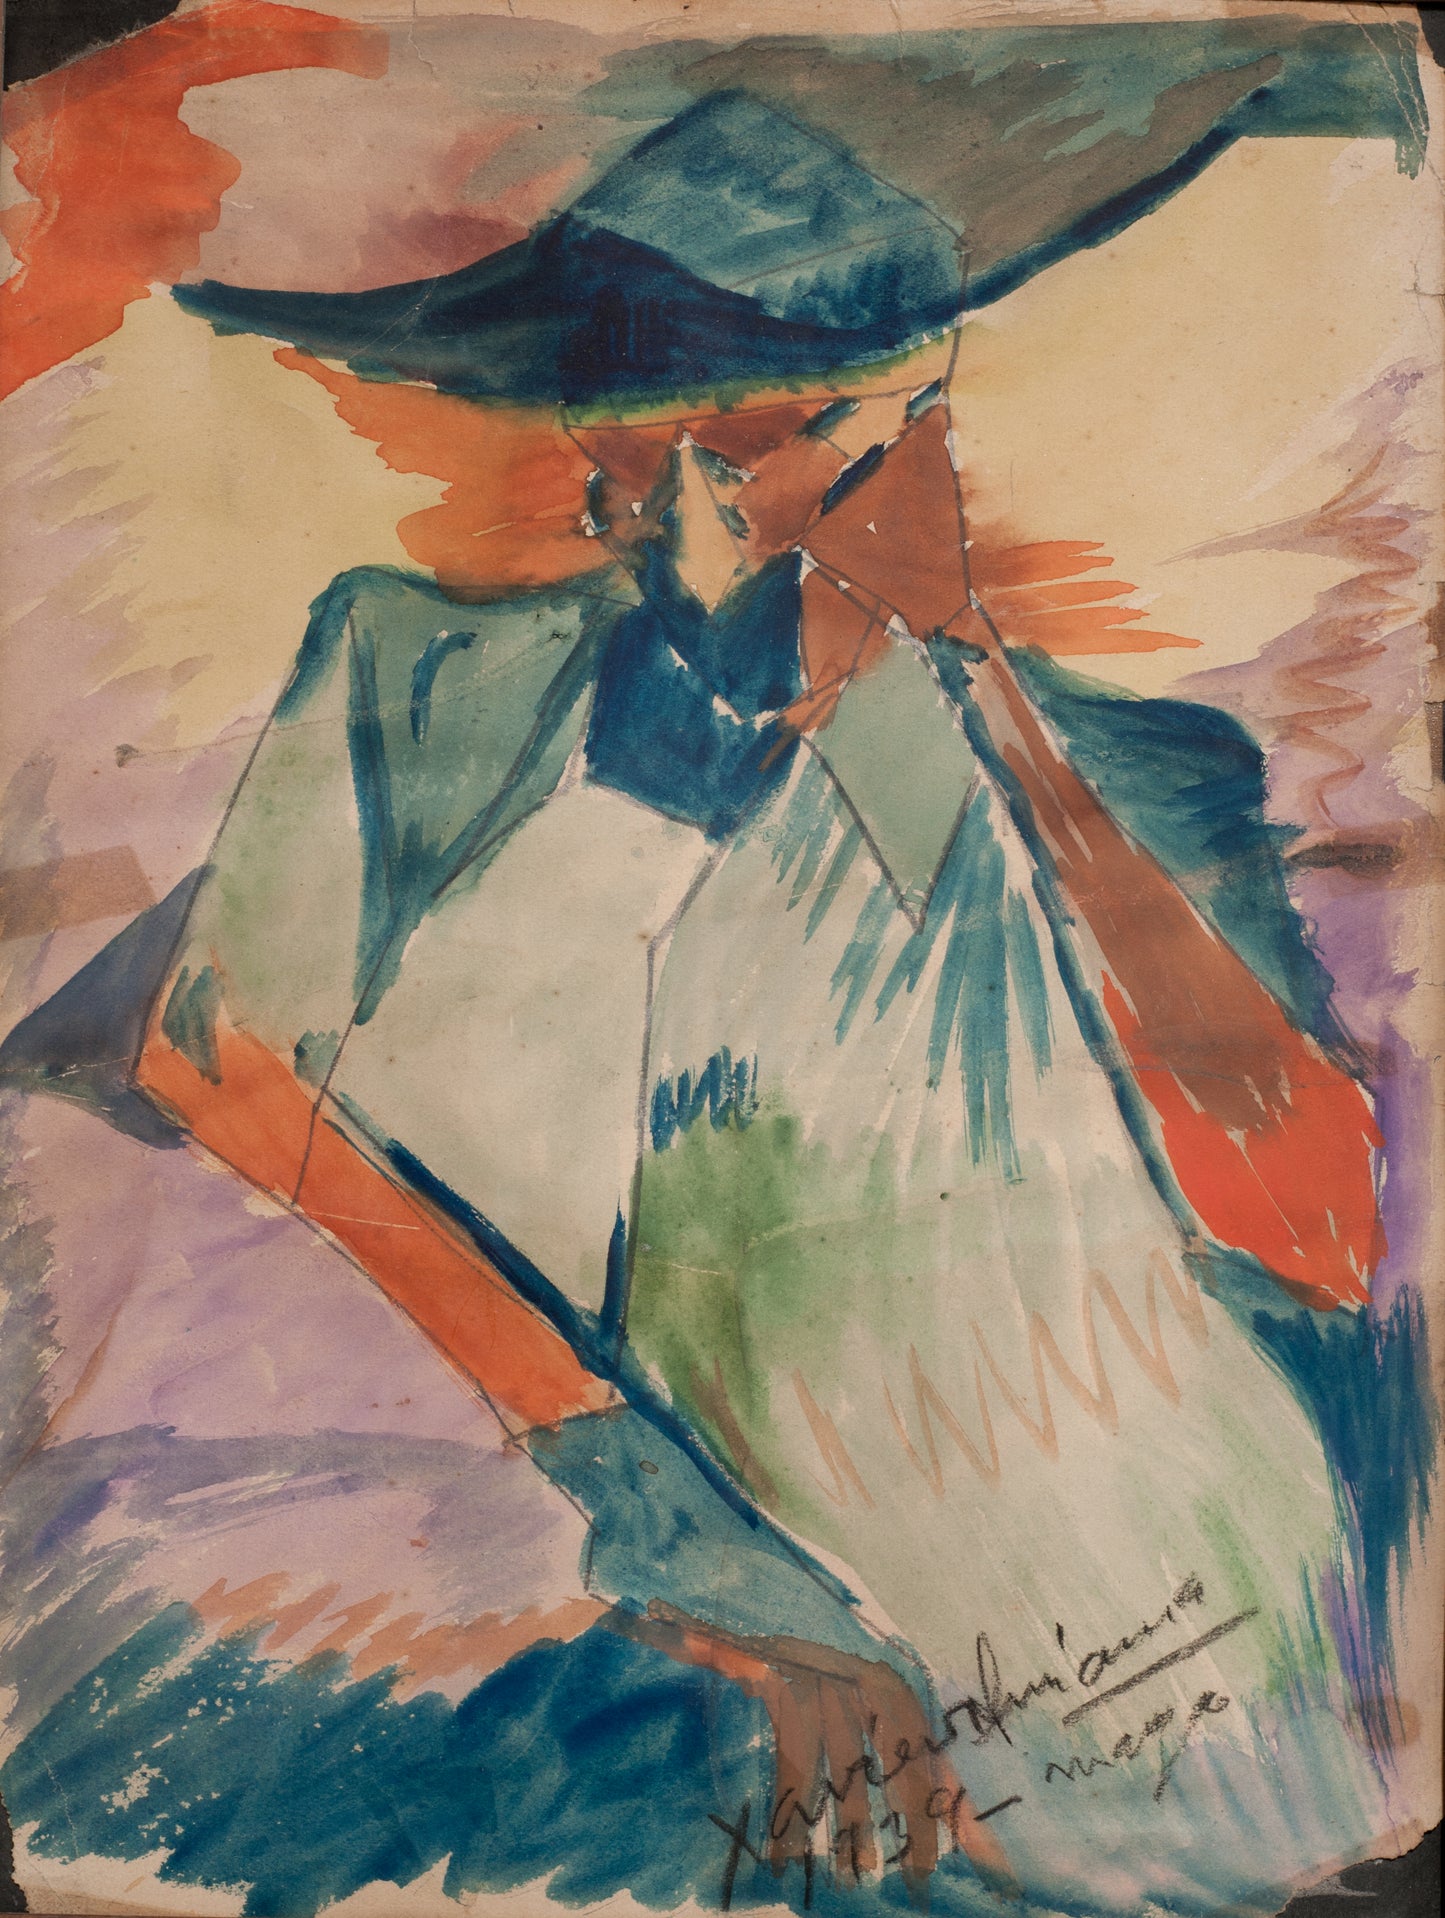 Xavier Amiama 11"x8" Figuratif Abstrait 1939 Dessin coloré sur papier Peinture #49-3-96GSN-Fondation Marie &amp; Georges S. Nader